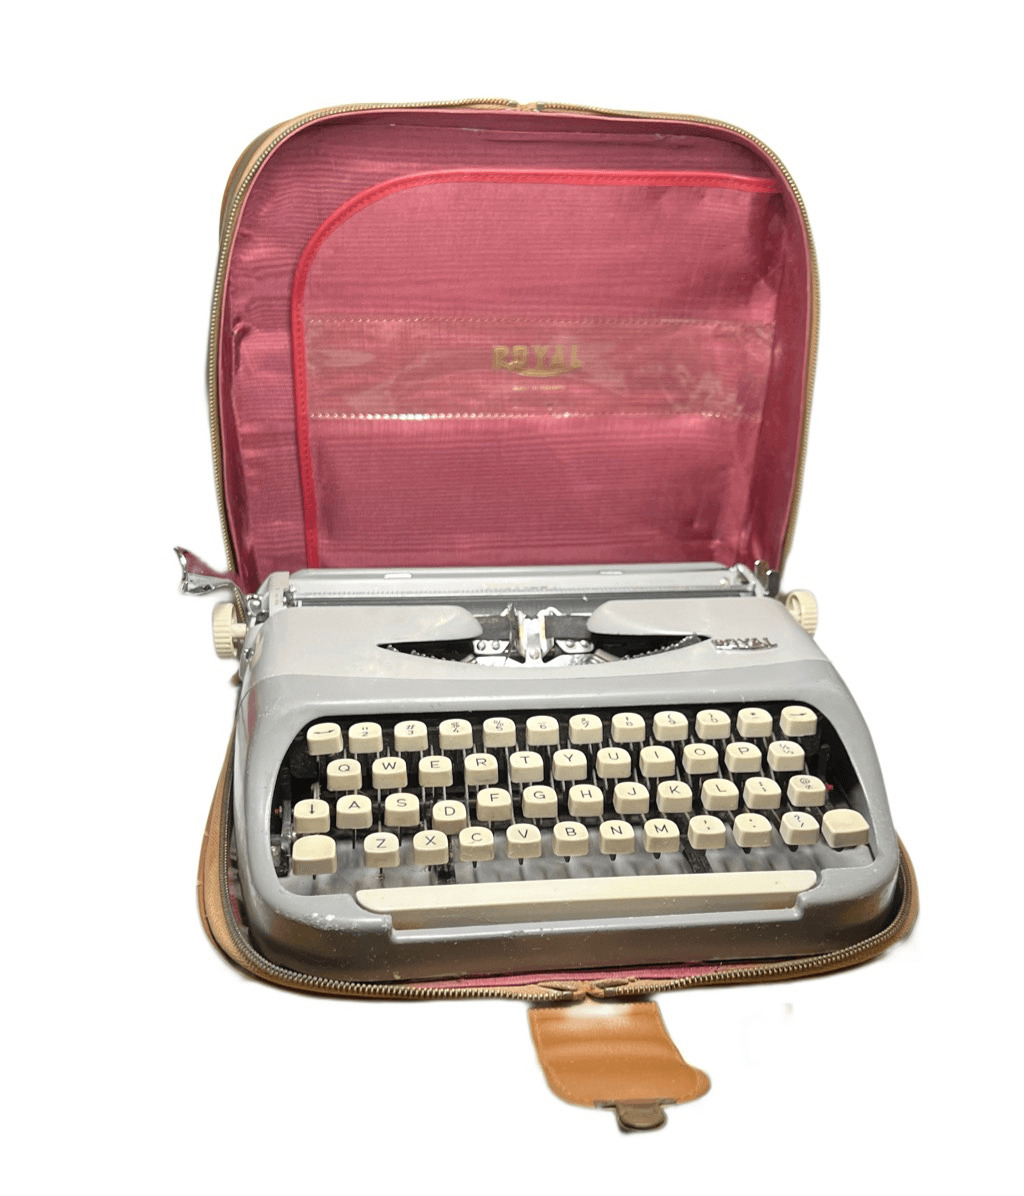 Vintage Royal Royalite Portable Manual Typewriter w/ Carrying Case Netherlands